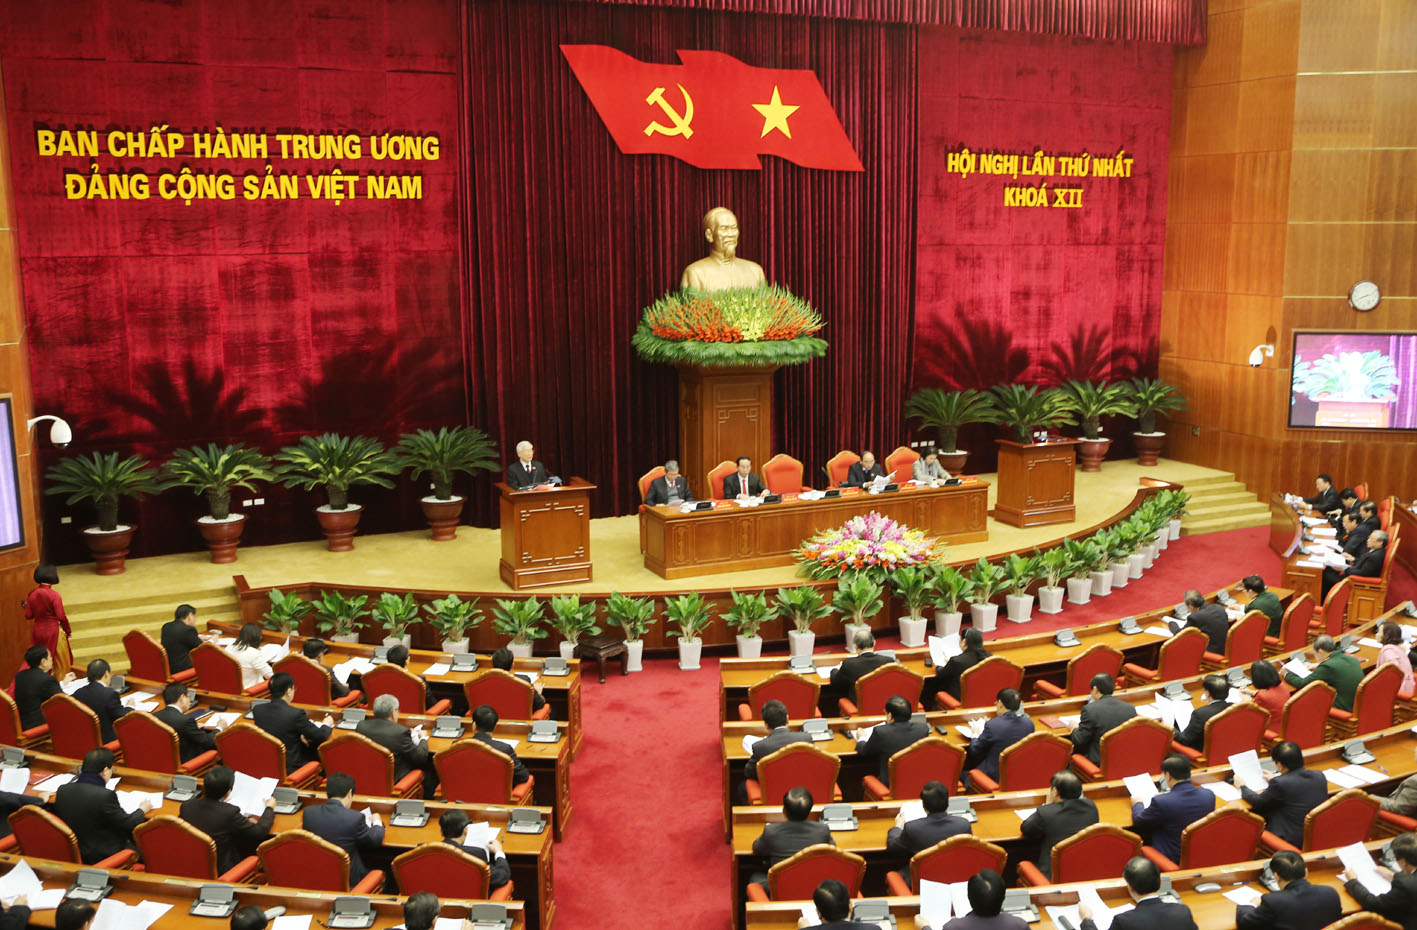 
Hội nghị lần thứ nhất Ban chấp hành Trung ương Đảng tiến hành bầu các chức danh lãnh đạo chủ chốt
